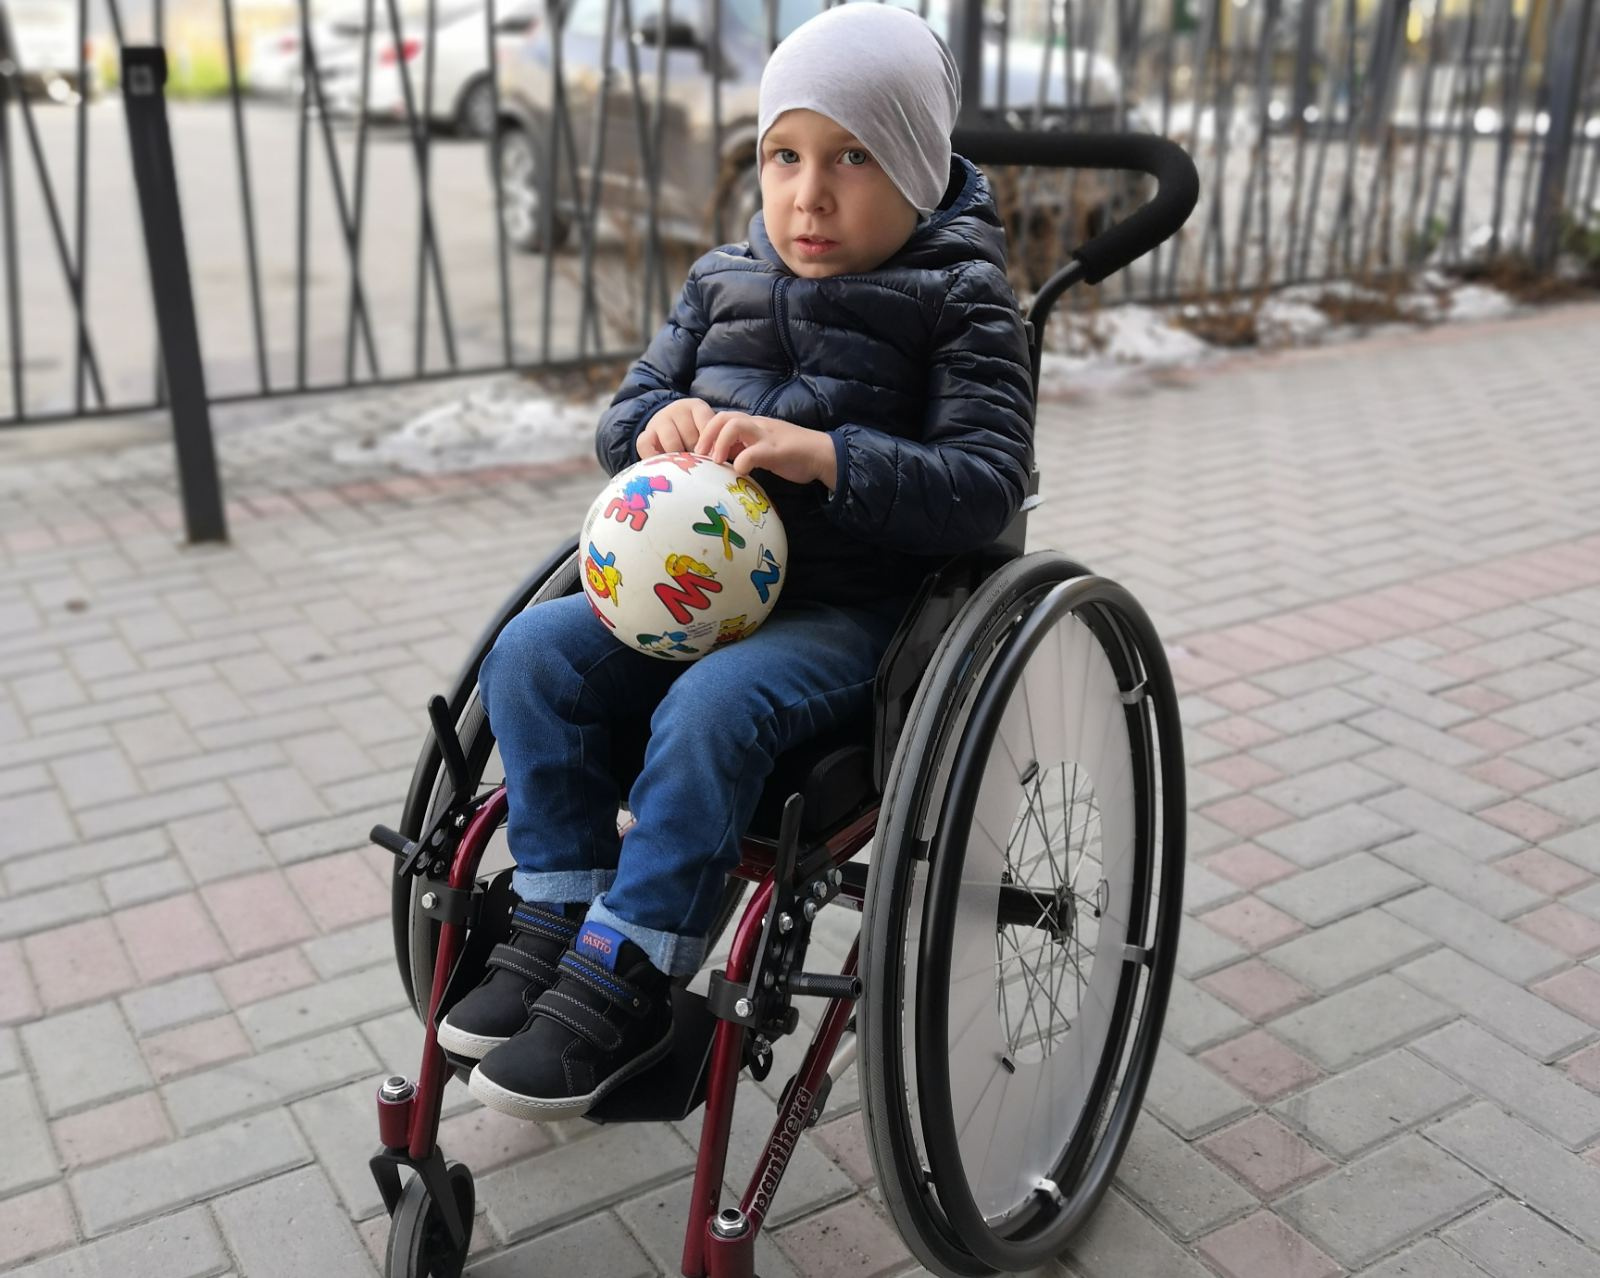 У пятилетнего Демида за год ослабли руки и спина. Пытаясь добиться бесплатного лечения «Спинразой», его родители обратились за помощью в прокуратуру